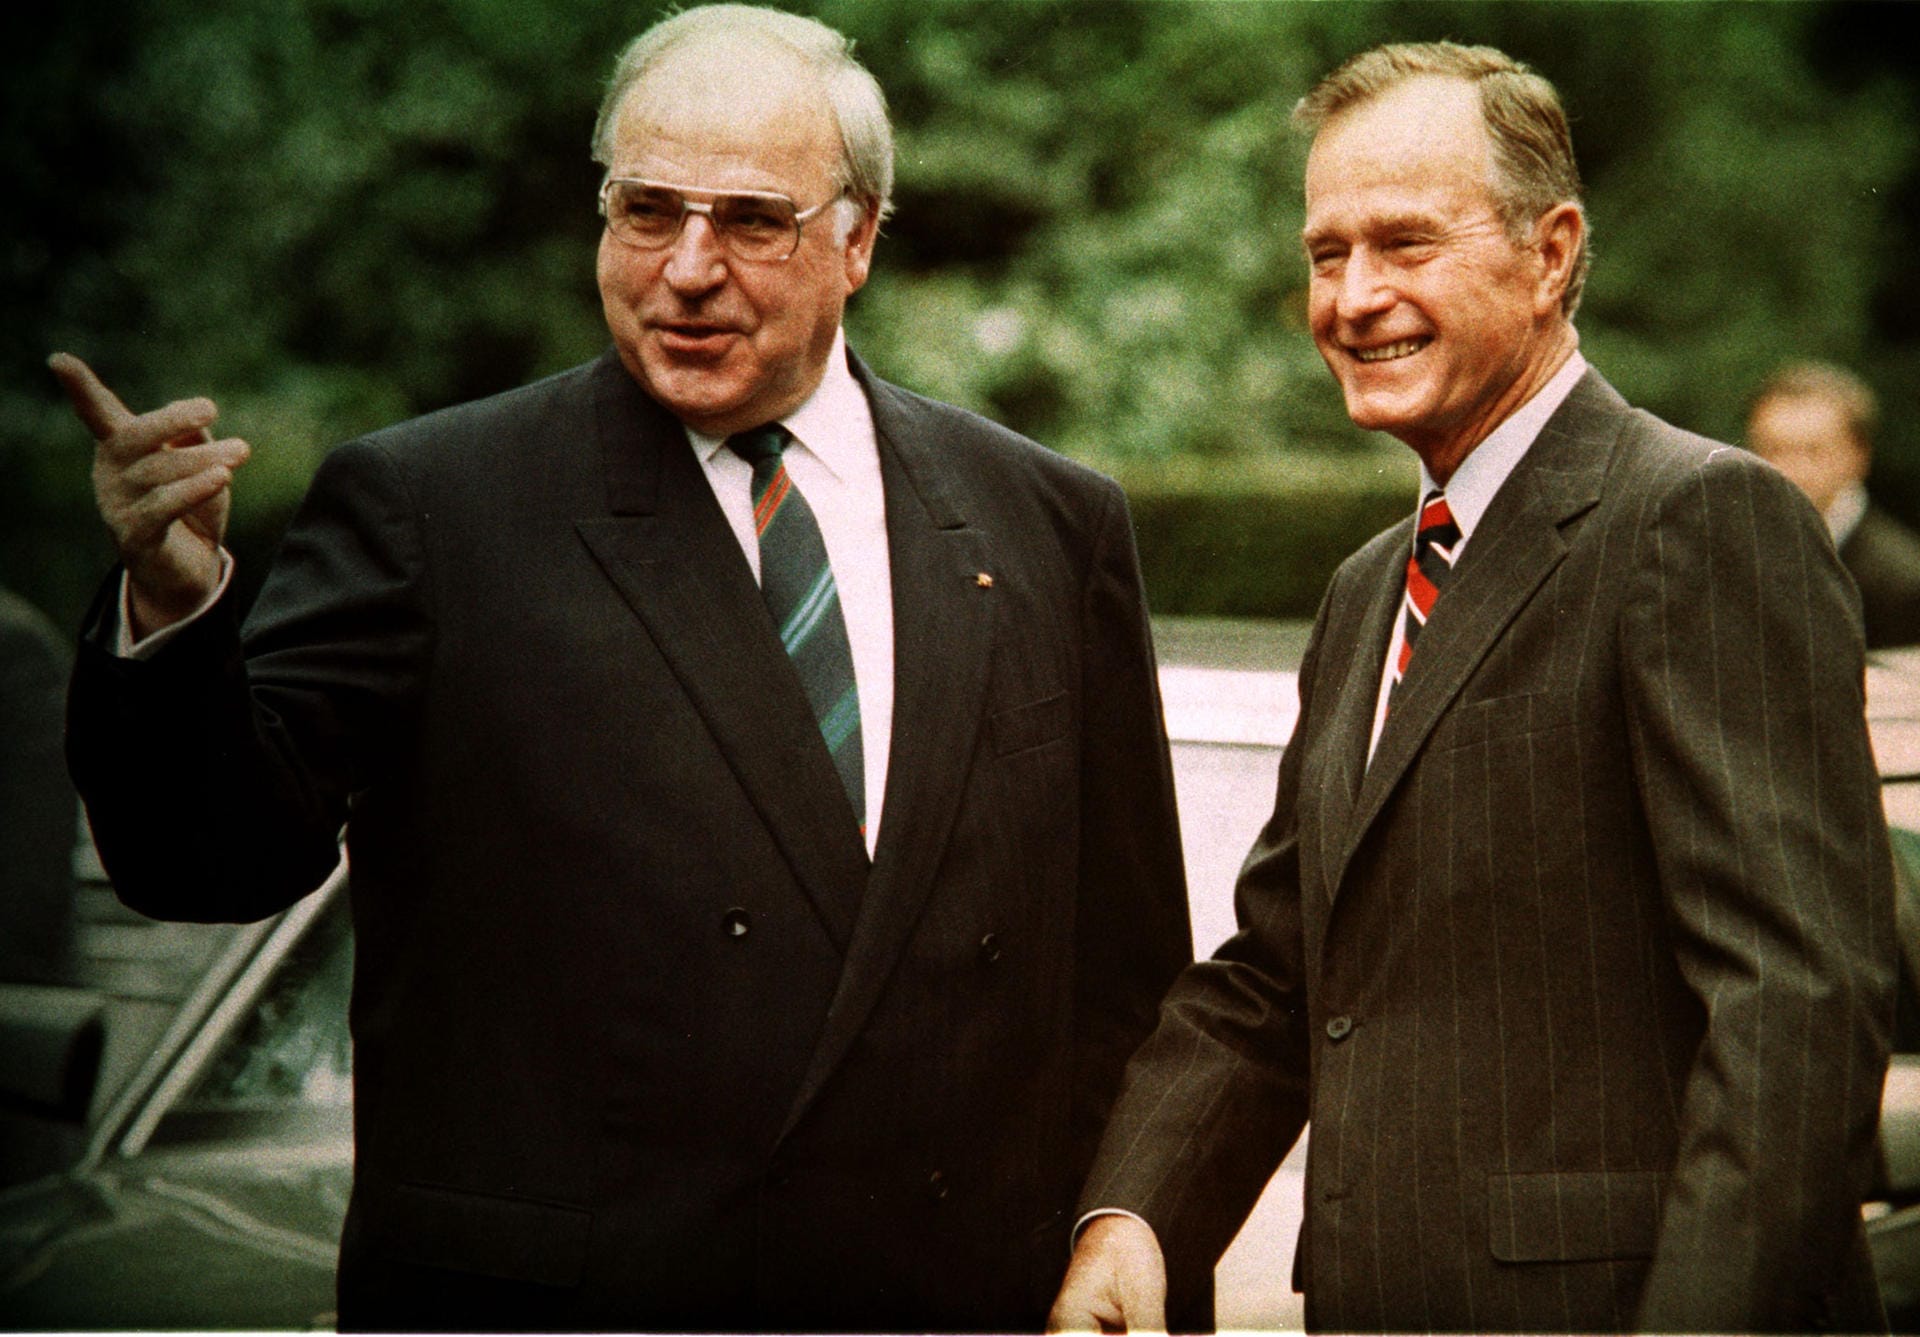 Hilfe bei der Einheit: Nach dem Mauerfall wird Bush zum Fürsprecher der deutschen Einheit. Bundeskanzler Helmut Kohl erhält vom US-Präsidenten – hier gemeinsam auf dem Nato-Gipfel im Juli 1990 in London – wichtige Unterstützung. Bush trägt dazu bei, dass Frankreich und Großbritannien ihren Widerstand gegen eine Wiedervereinigung aufgeben.